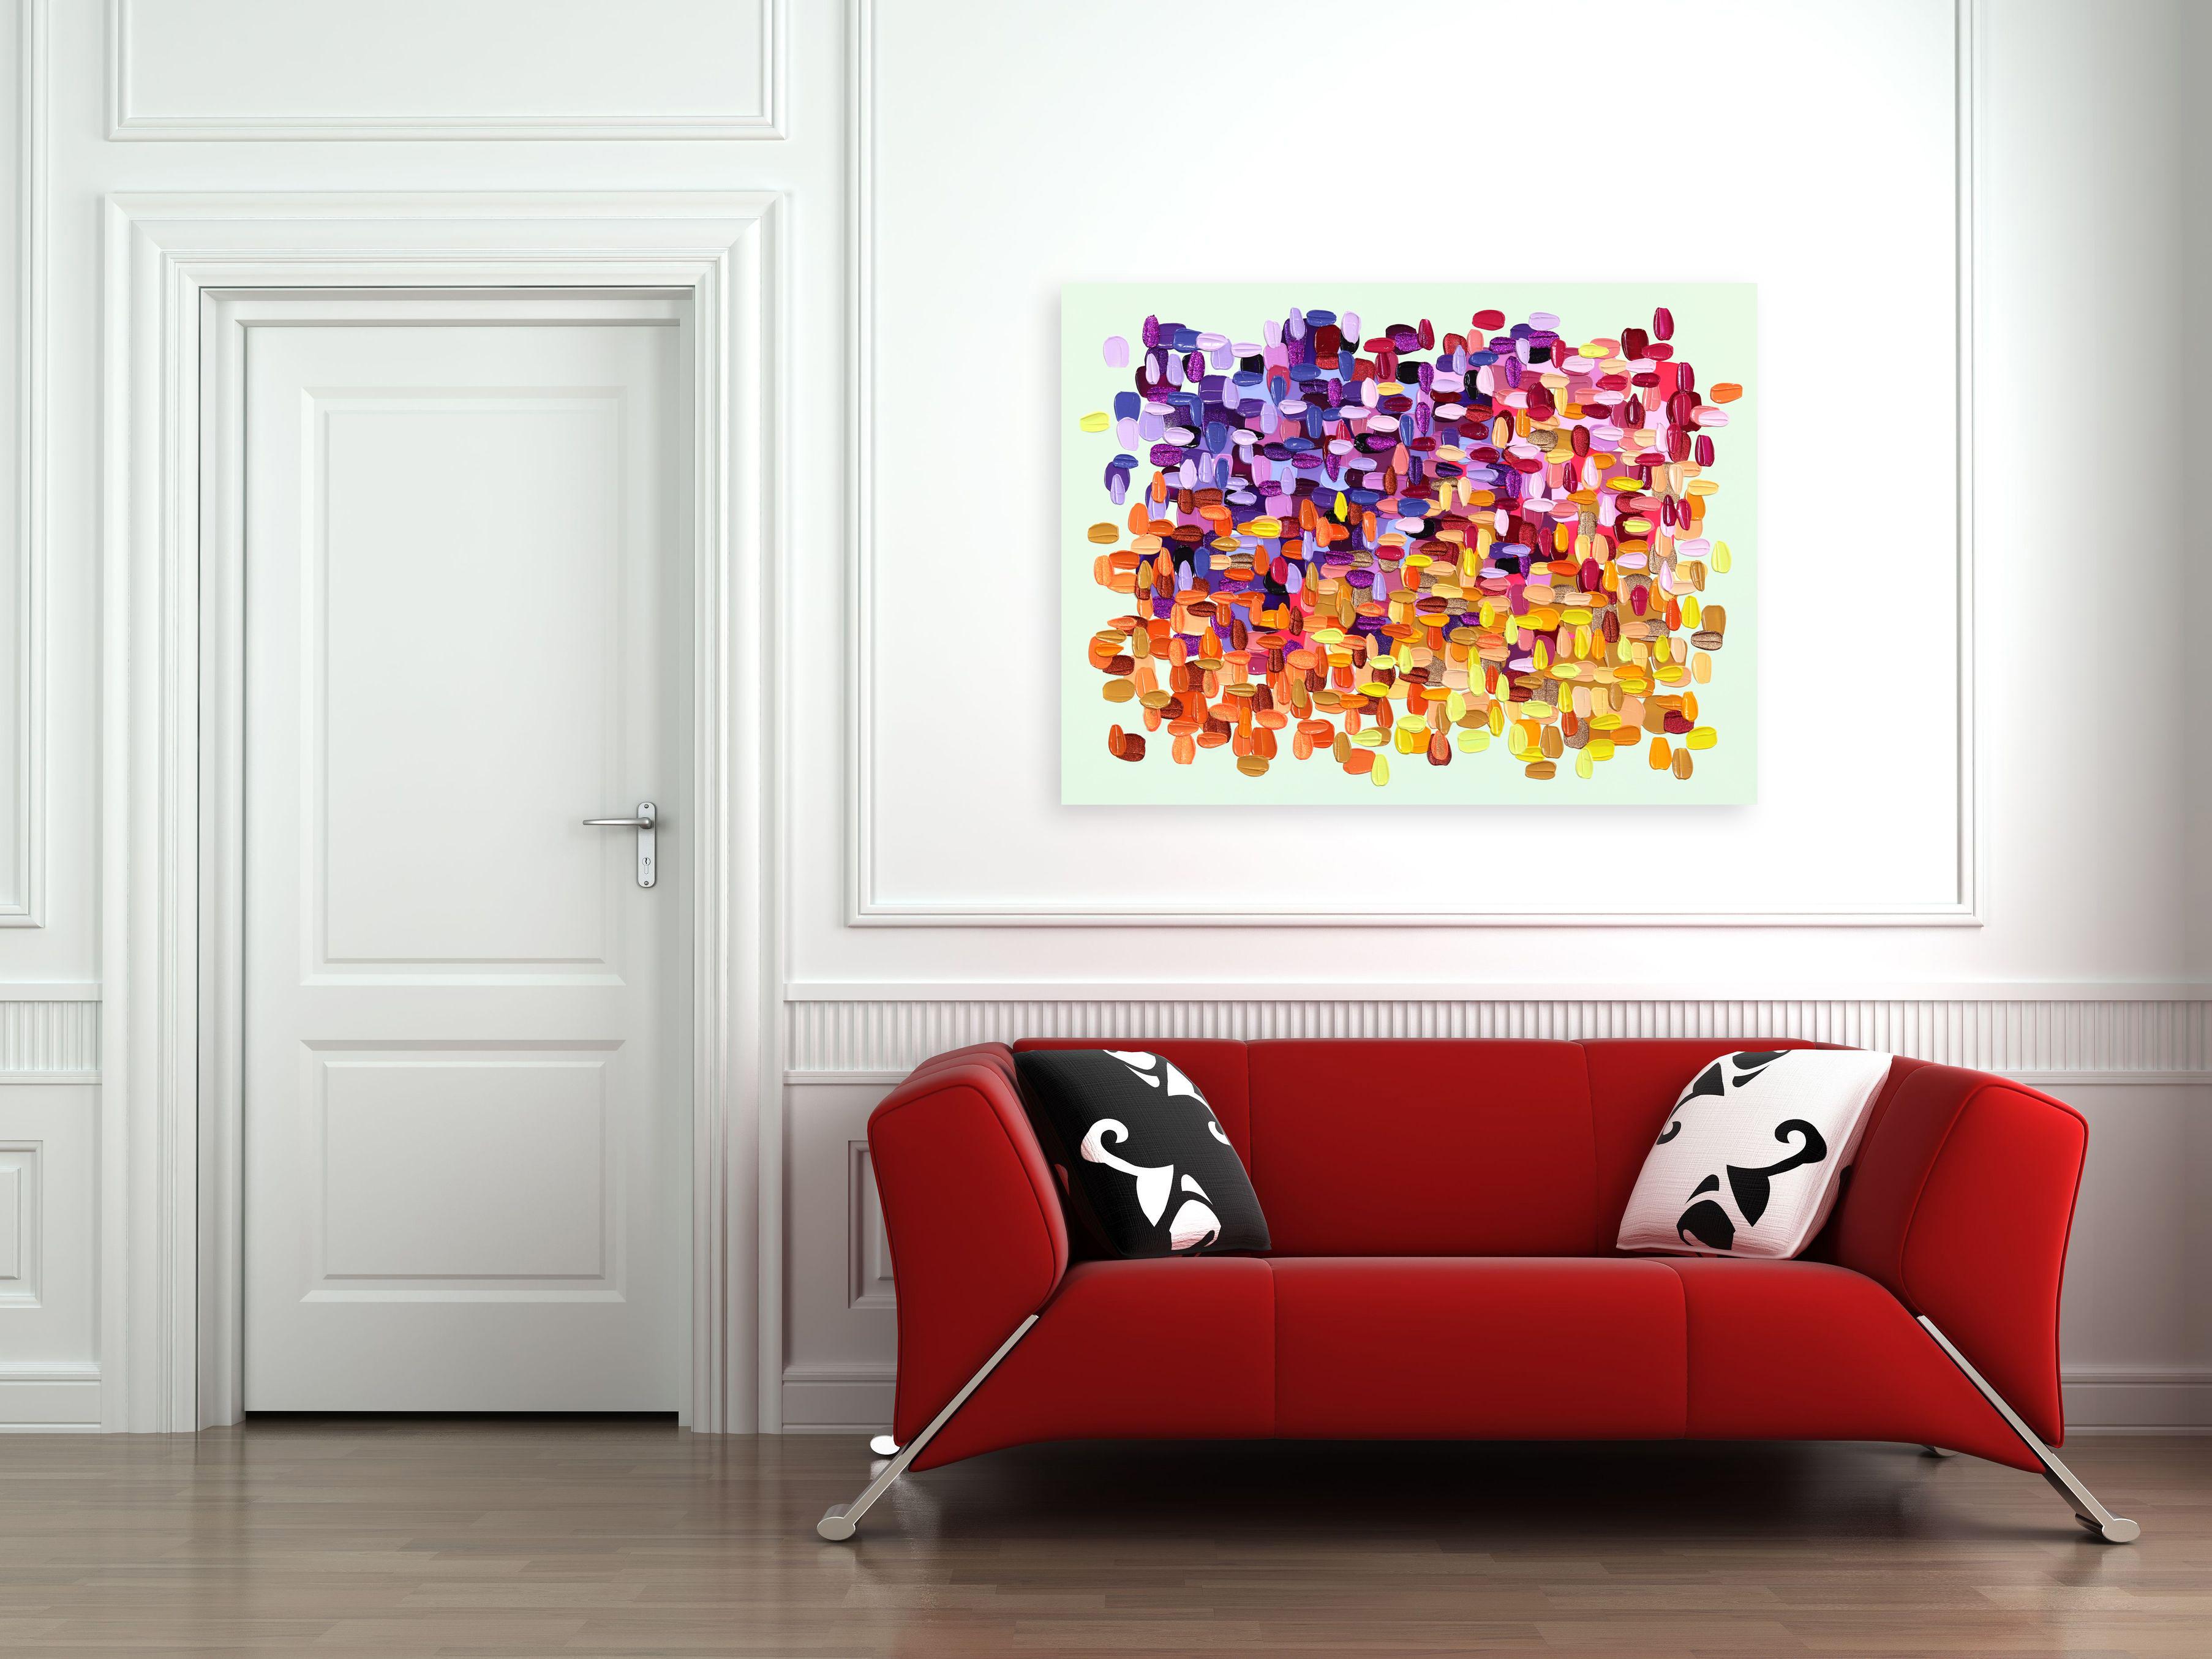 Die abstrakten Kunstwerke der Künstlerin Shiri Phillips sind mit pastos gemalten Strichen in leuchtenden Farben gestaltet. Ihre Bilder sind durch die Schichtung von Acrylfarbe in fließenden Pinselstrichen mit Textur überflutet. Inspiriert von der